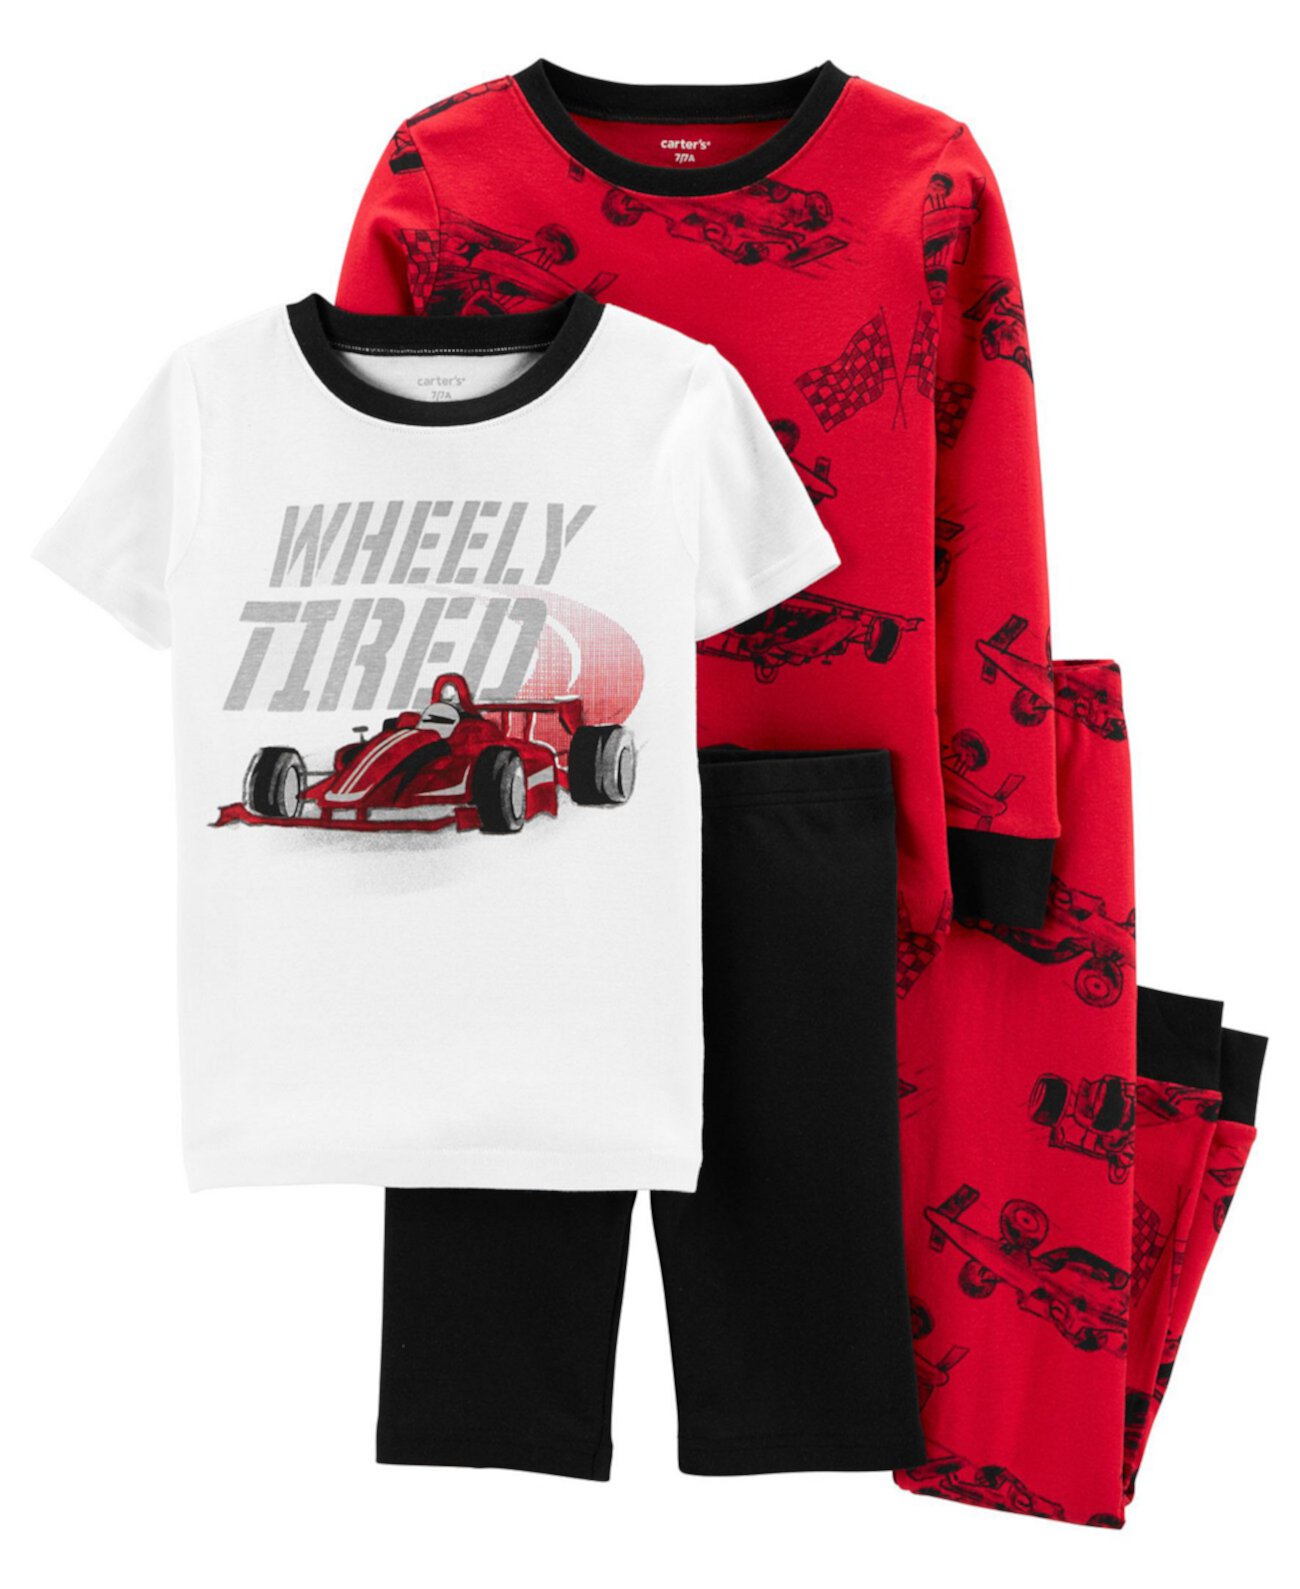 Хлопковая пижама Snug Fit Big Boys Race Car, комплект из 4 предметов Carter's